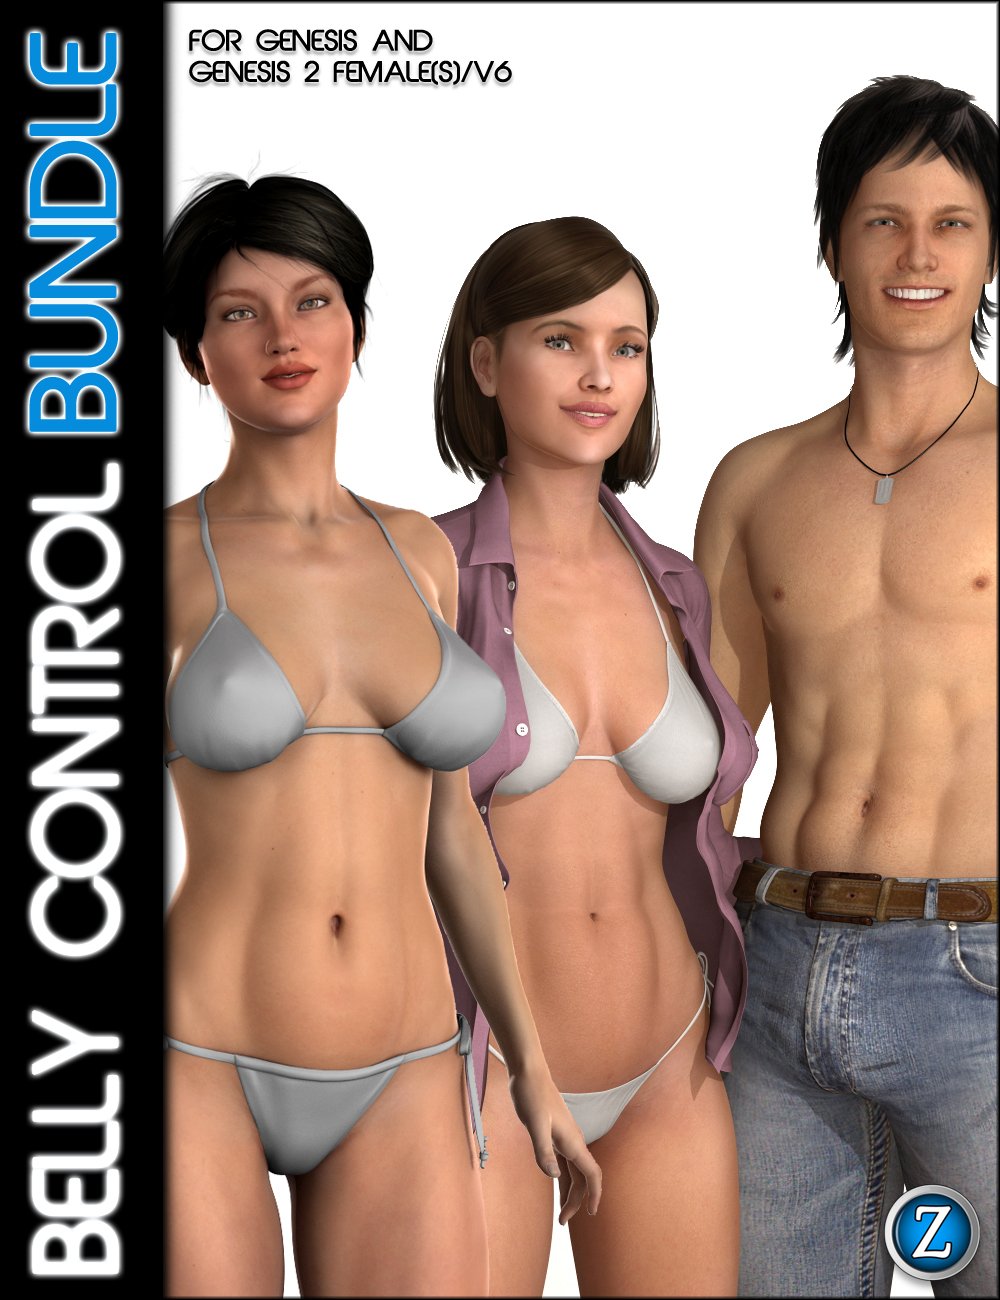 Belly Control Bundle by: Zev0, 3D Models by Daz 3D